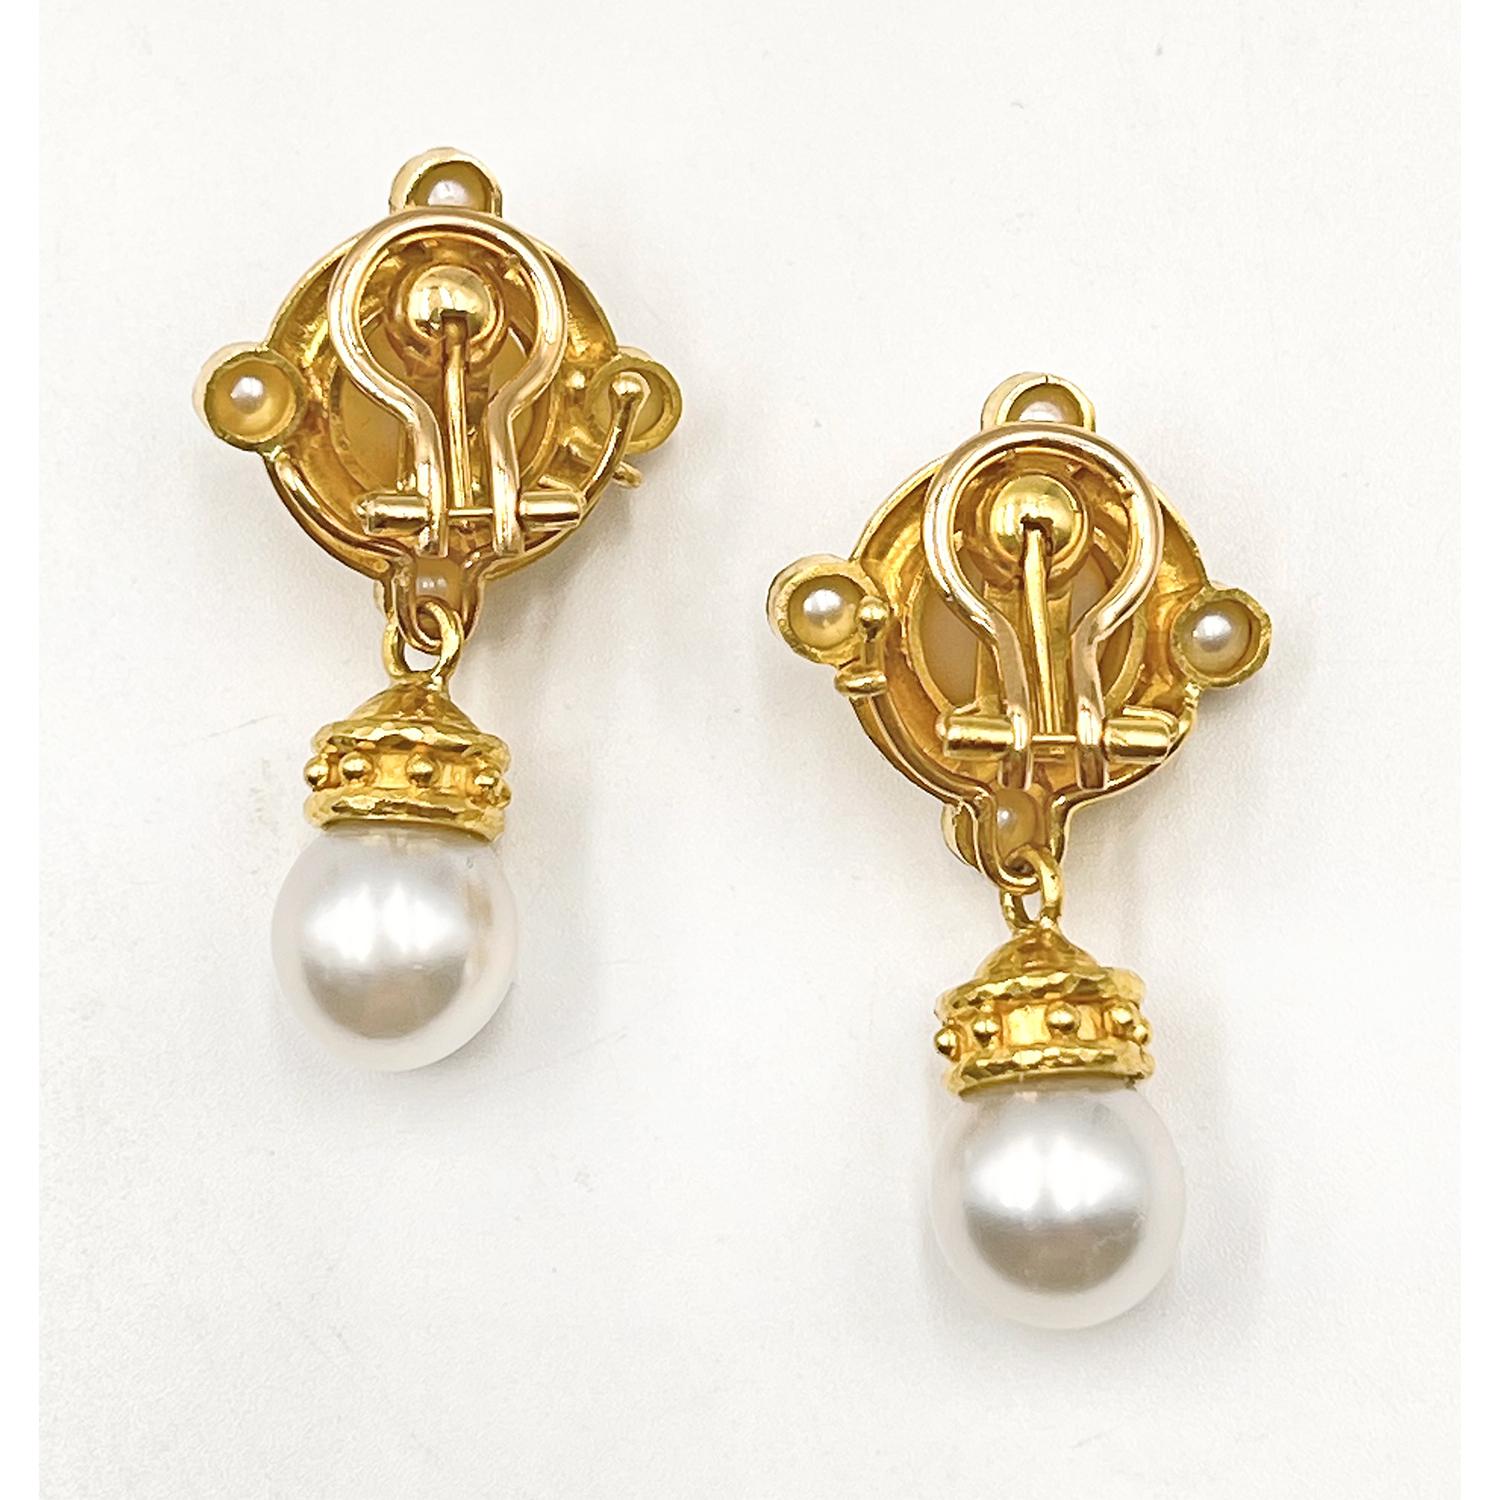 Modern Elizabeth Locke 19k Gold South Sea Pearl Drop Earrings